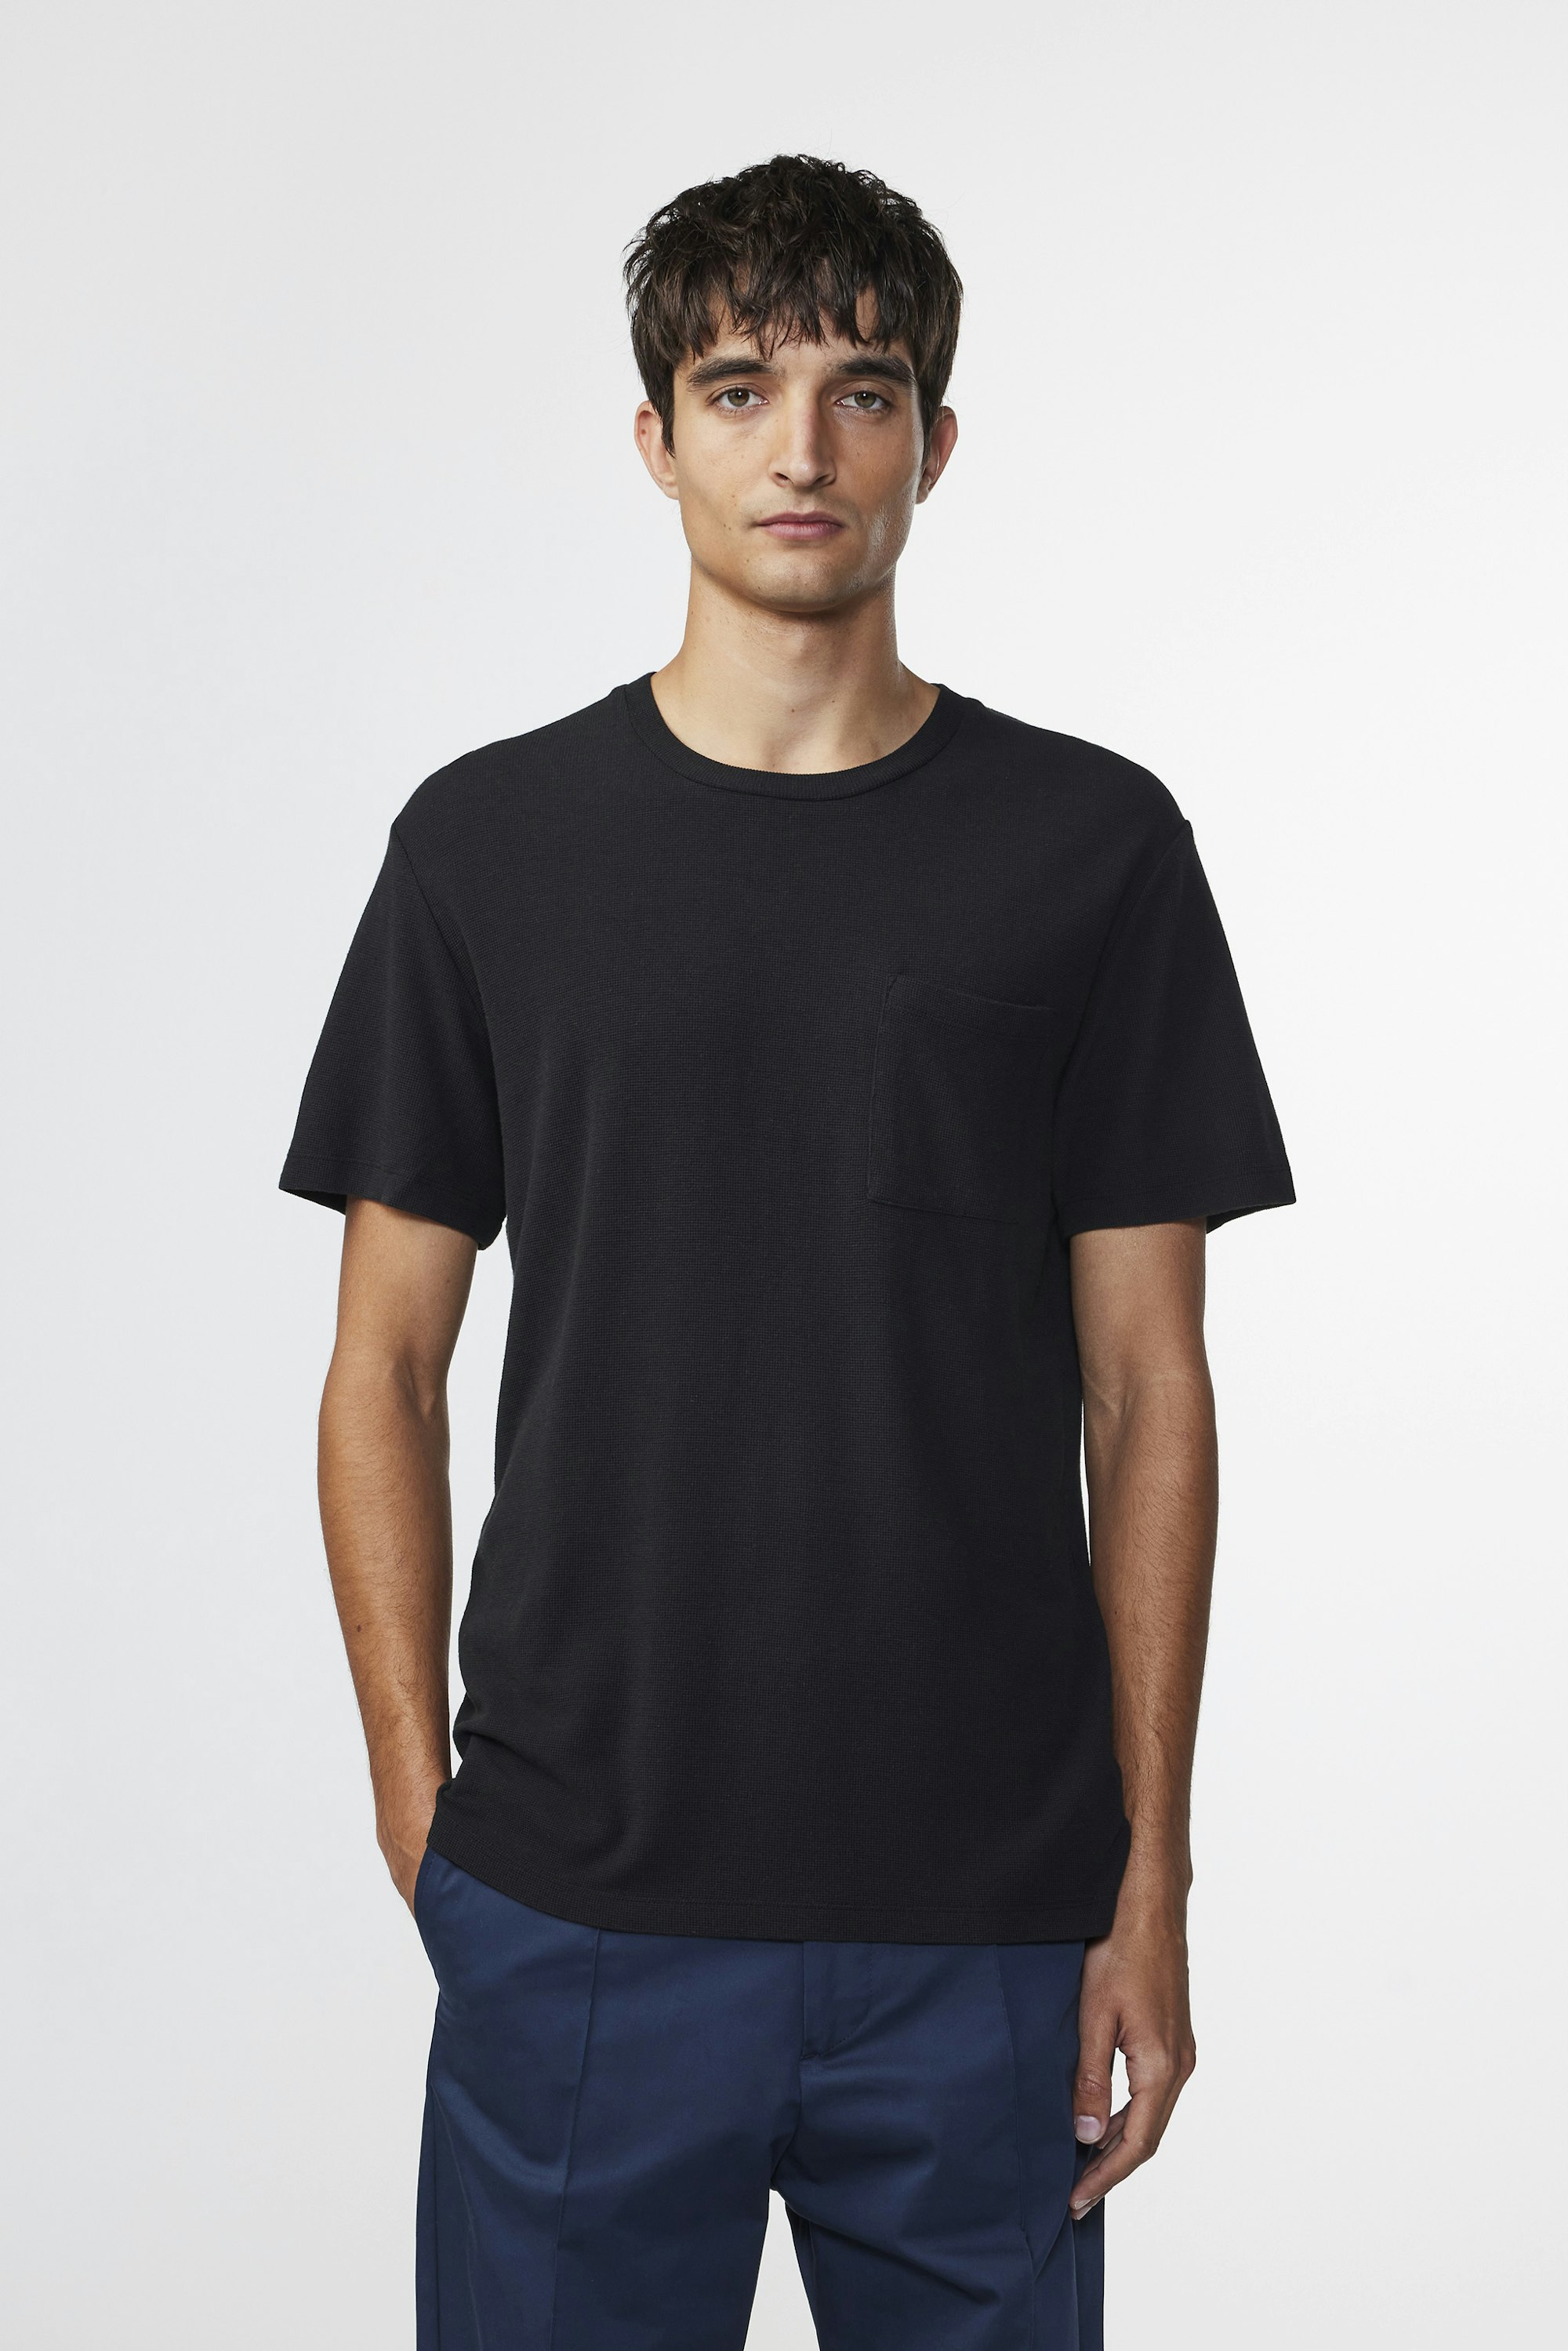 Clive Buy - men\'s - Black 3323 online at t-shirt